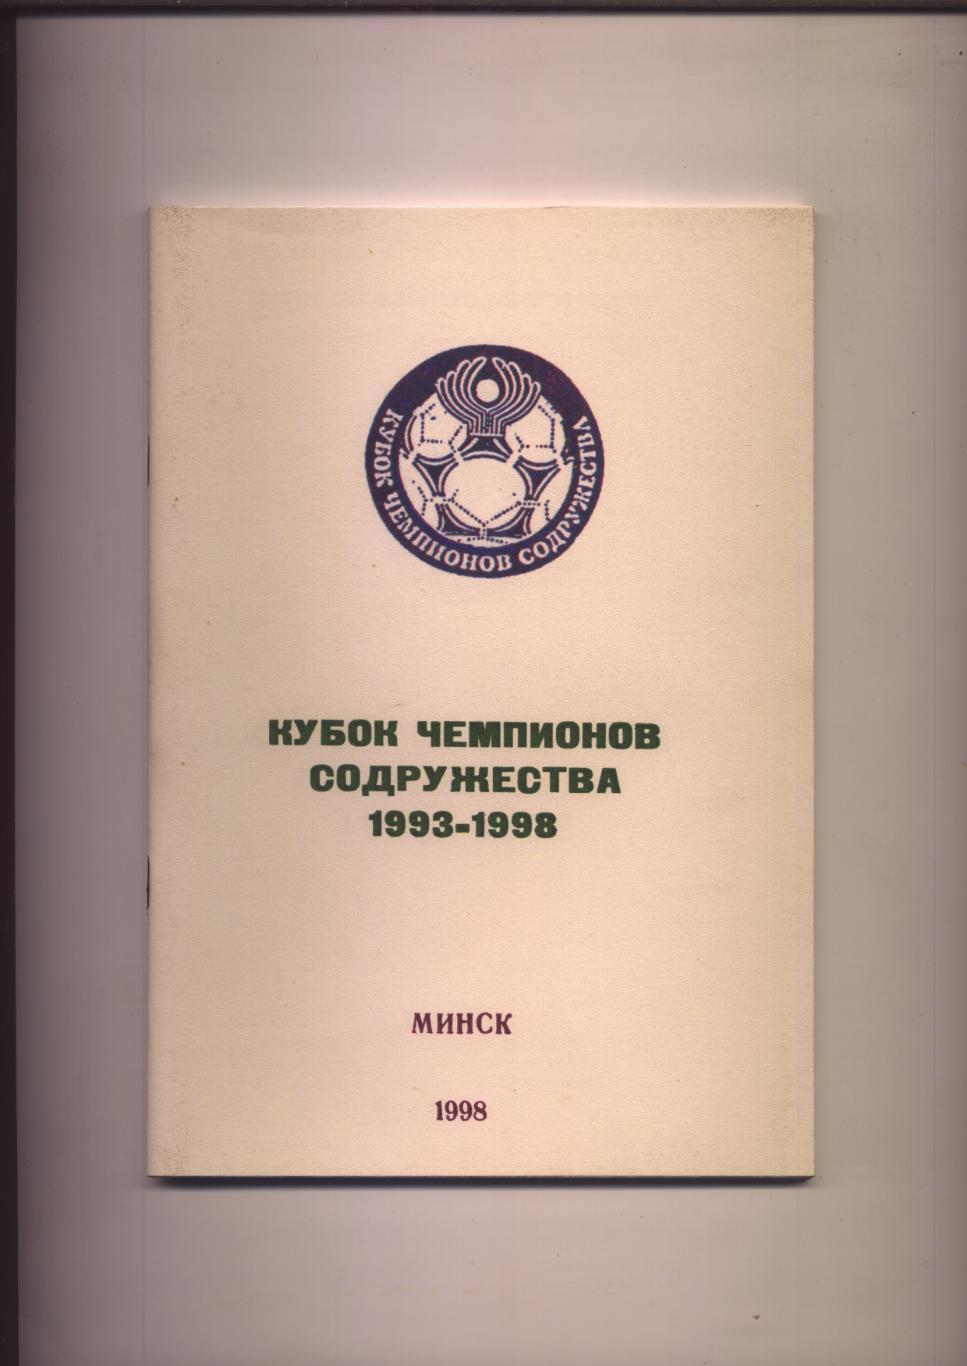 Футбол Кубок Чемпионов Содружества 1993-1998 История статистика 84 стр.